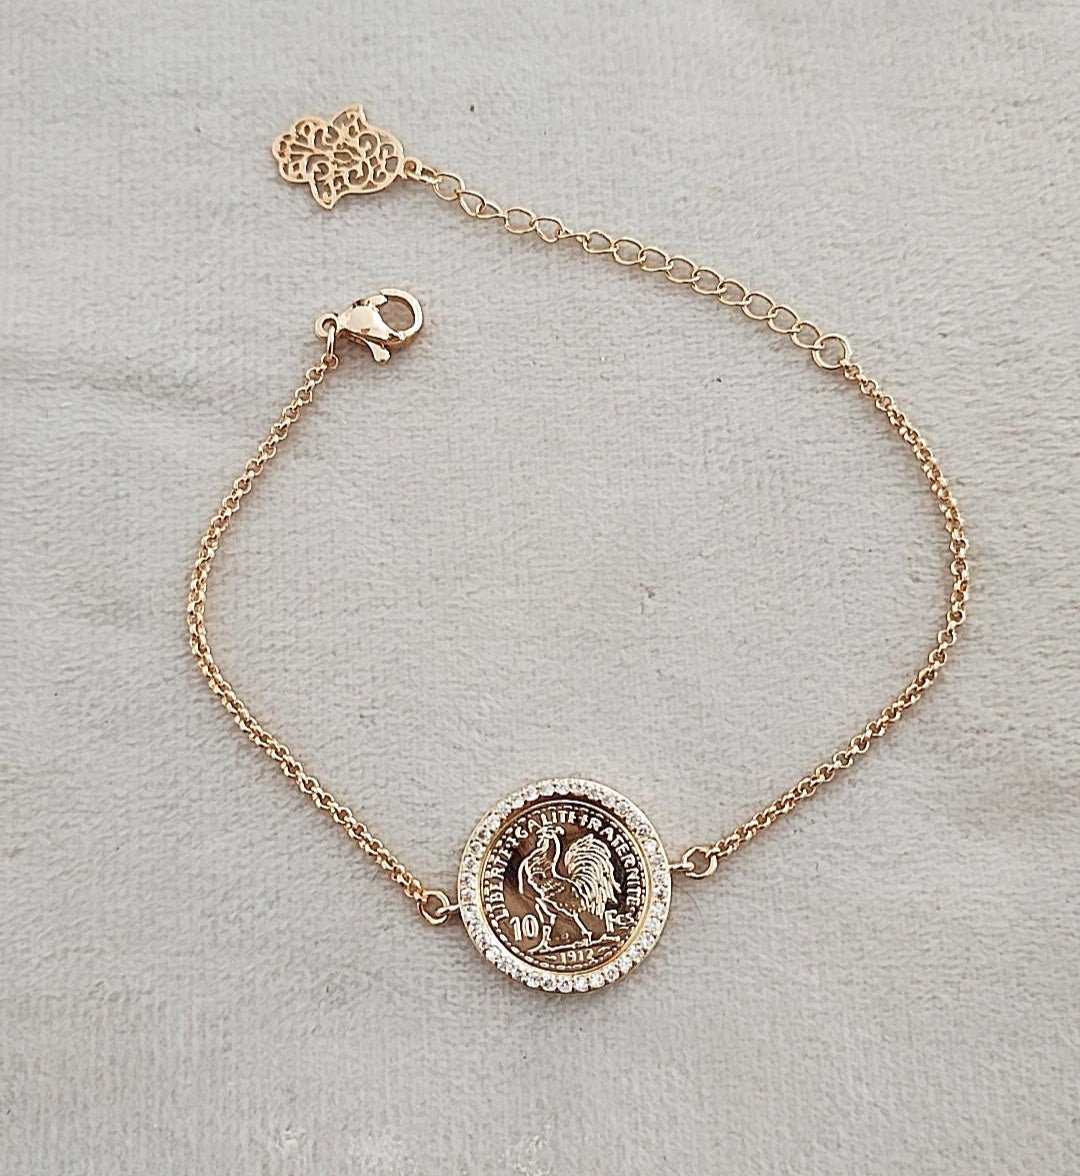 Bracelet de charme coq, bracelet poulet, bracelet charme, bracelet coq en  argent sterling, bijoux signe du zodiaque, cadeau petite amie -  France